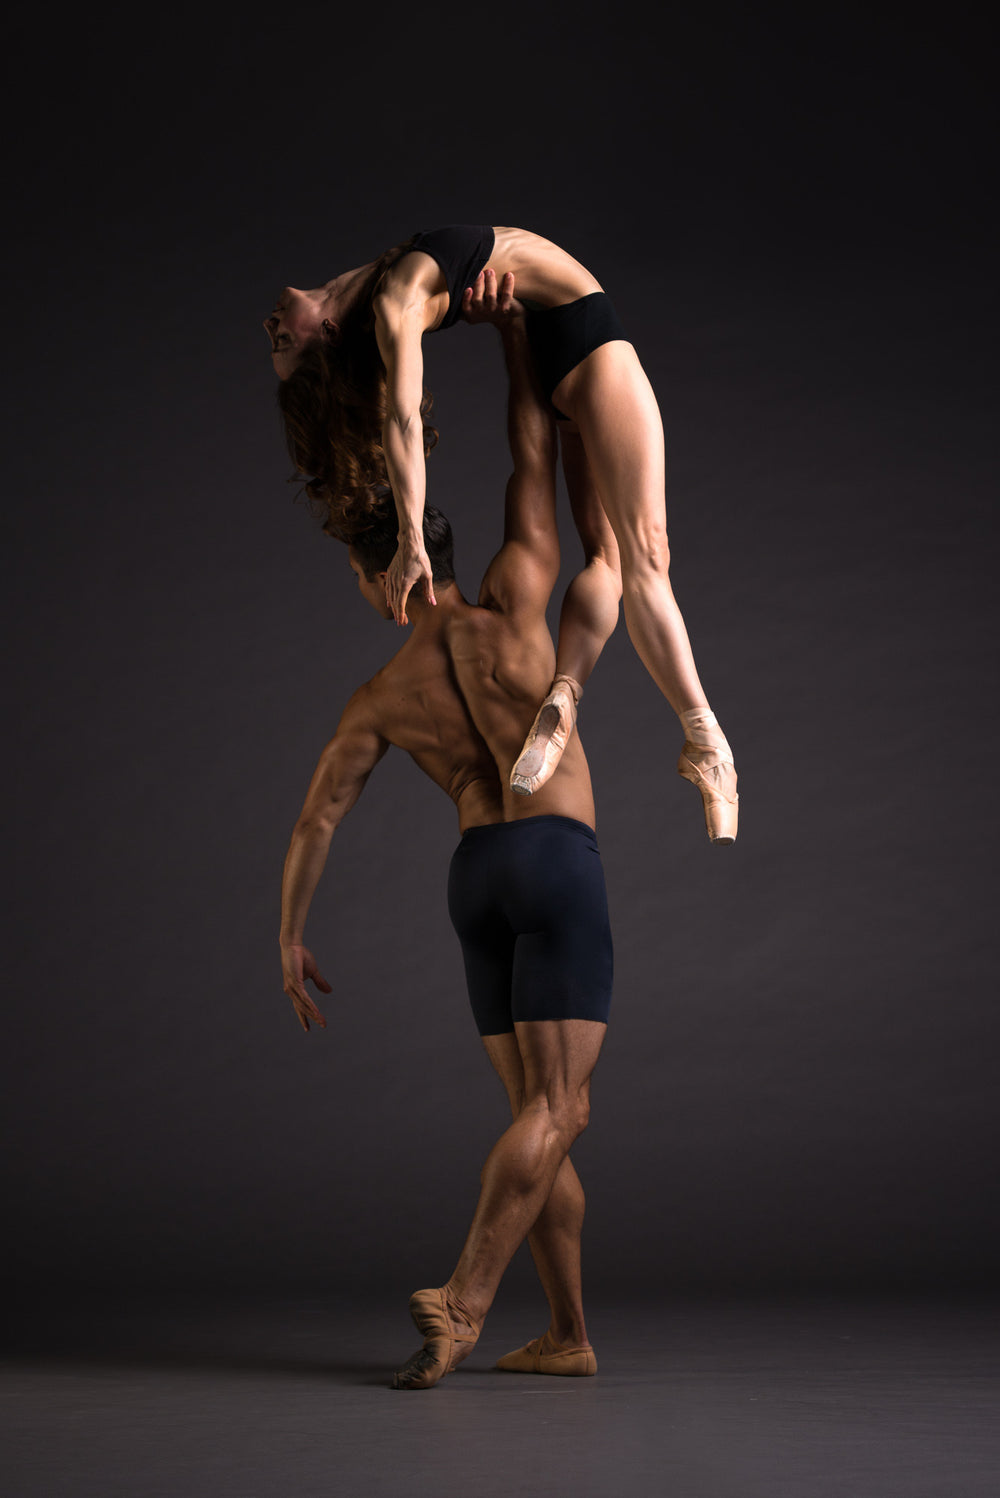 Art Dance Photography Prints - Purchase Online the artwork: Dancers duet in colors by Francsico Estevez